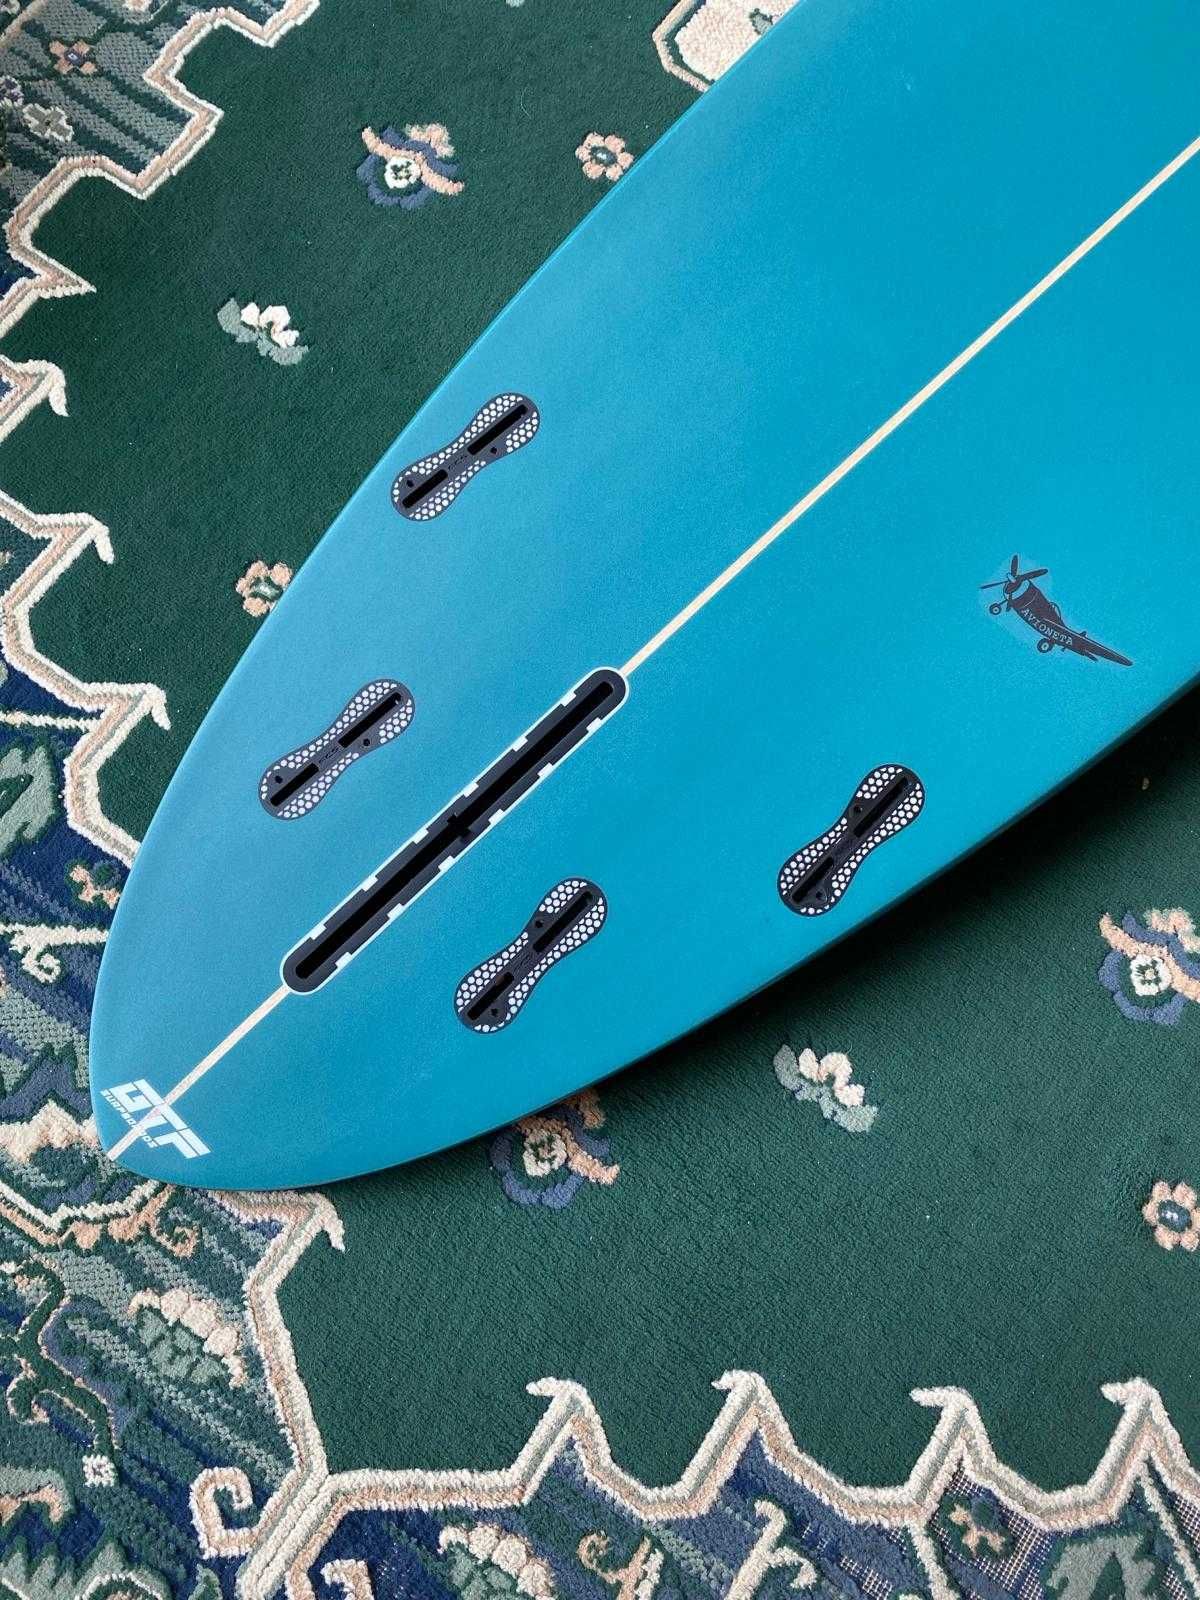 Avioneta 7´6´´ GTF Surfboards